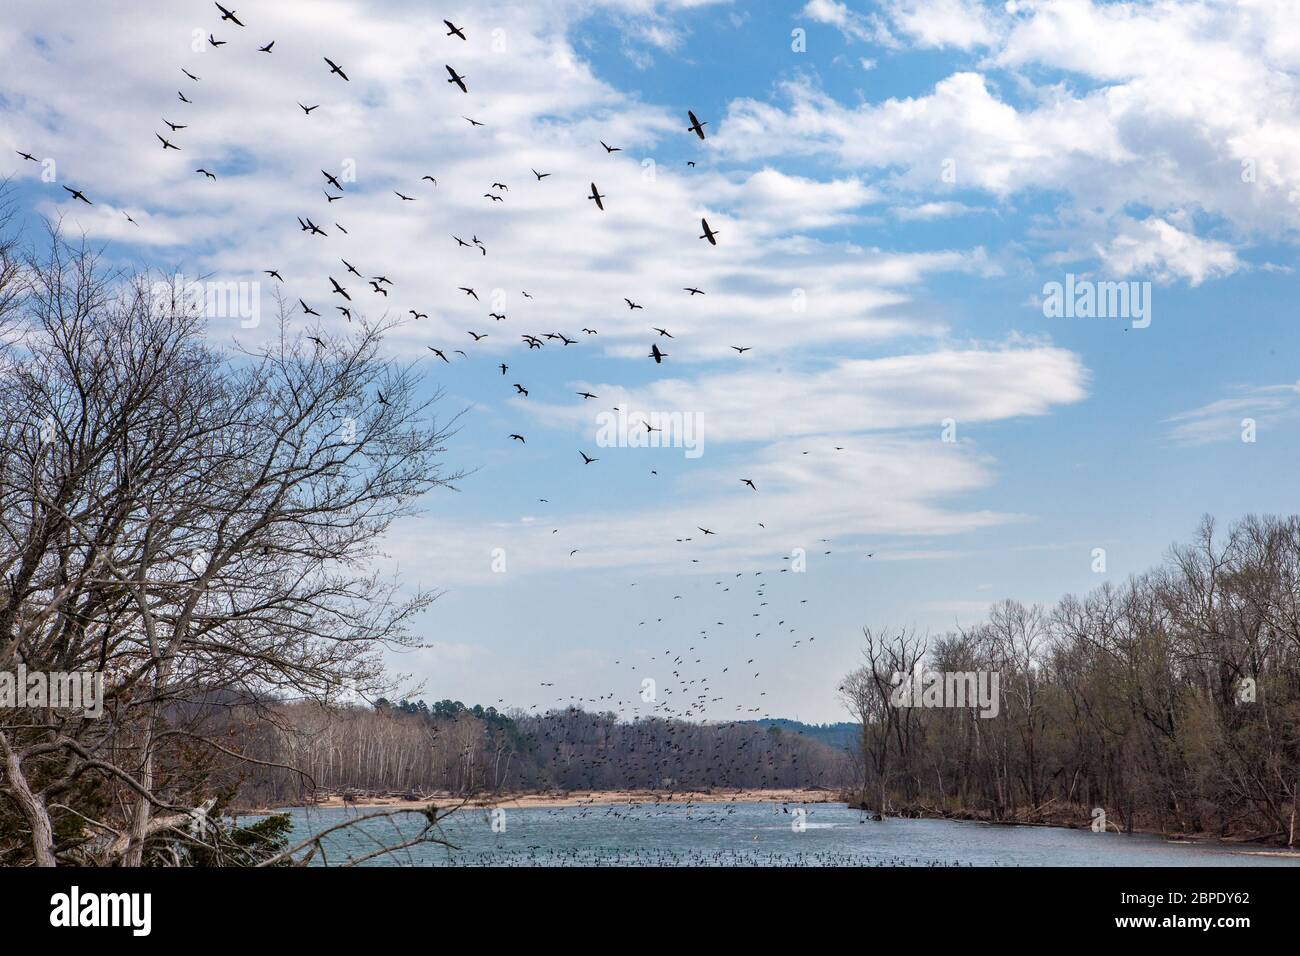 Un rebaño de cormoranes de doble cresta (Phalacrocorax auritus) se rueda sobre un río en Oklahoma bajo un cielo parcialmente nublado, con árboles estériles Foto de stock